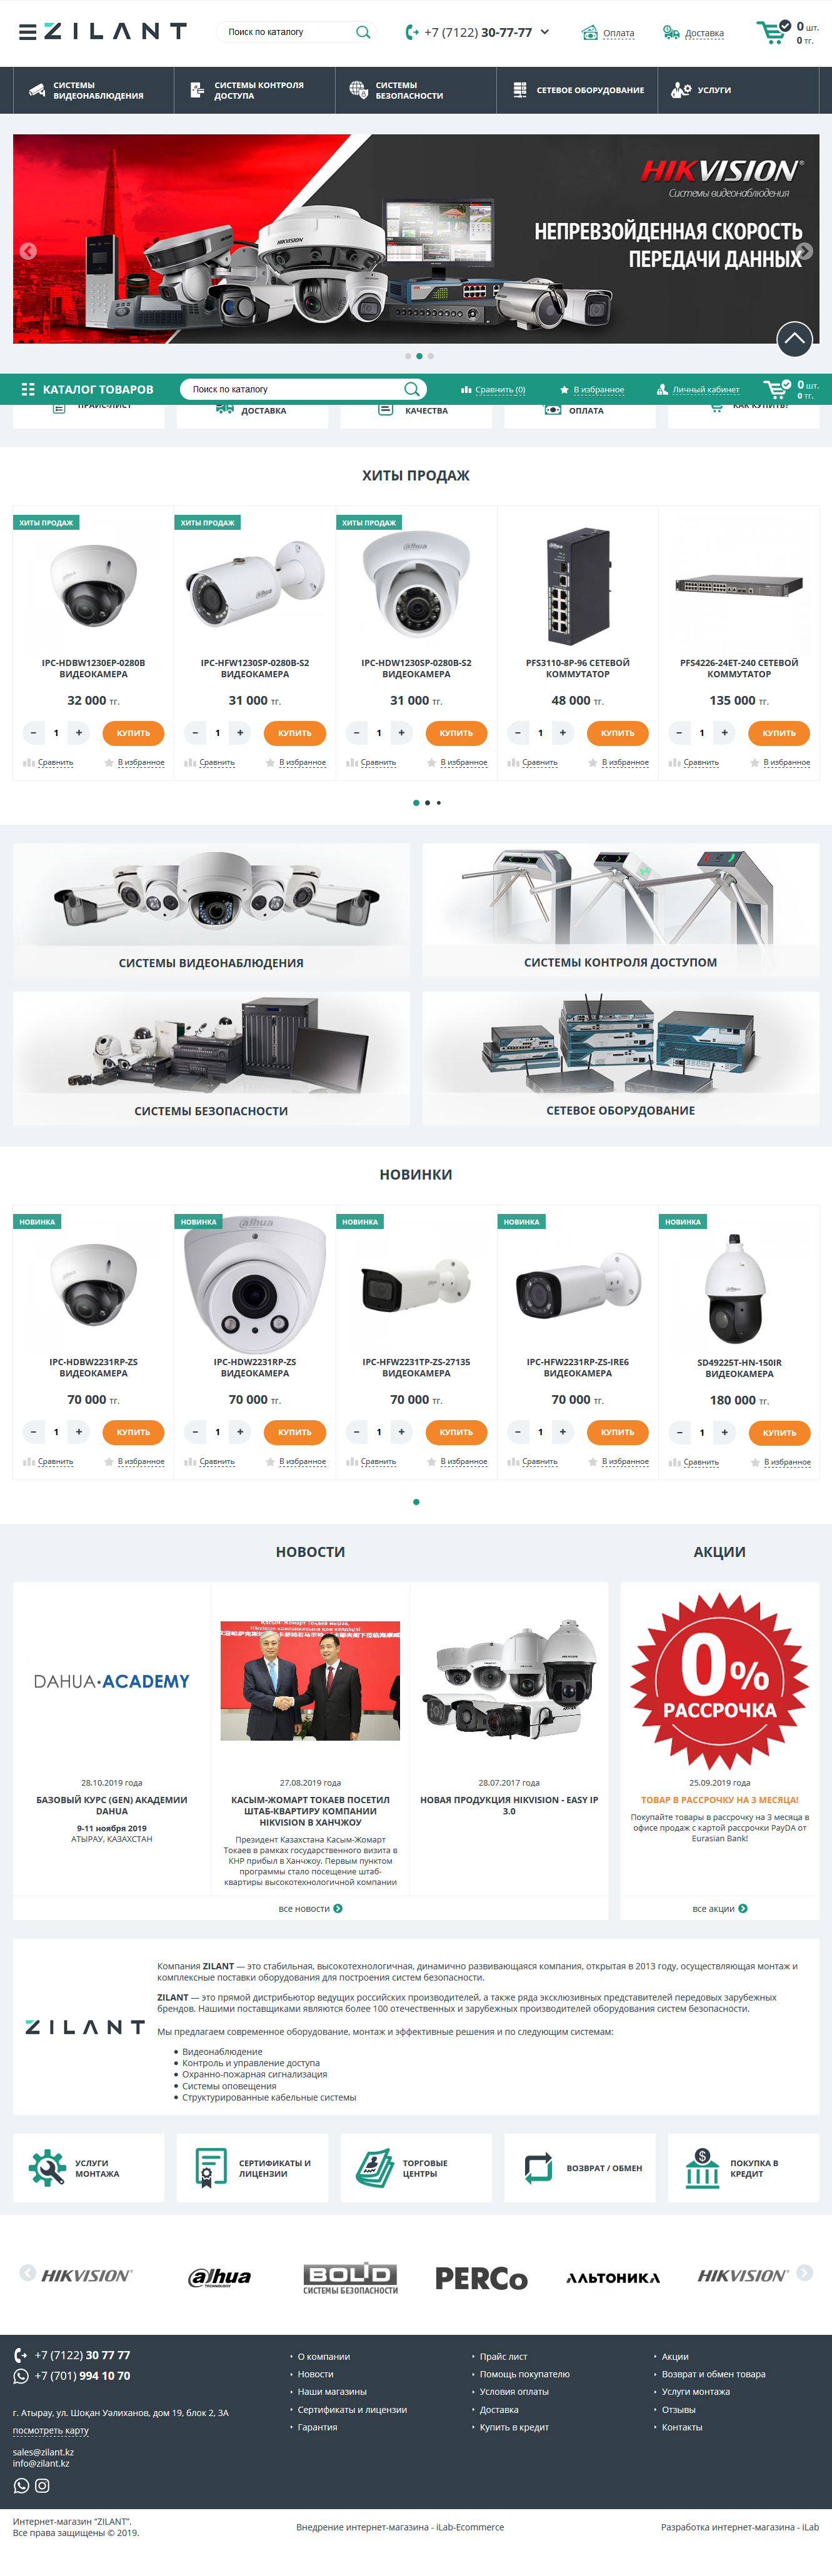 интернет-магазин систем видеонаблюдения, систем контроля доступом, систем безопасности - zilant.kz